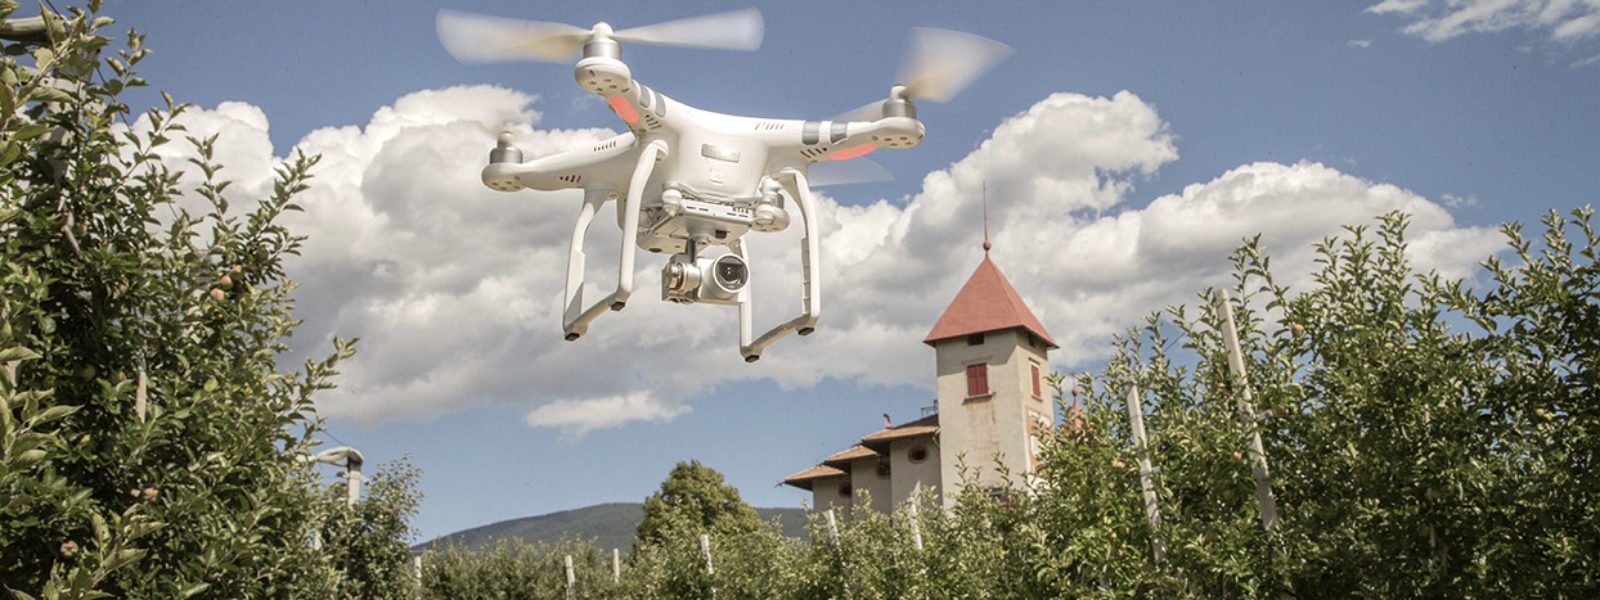 Drone che vola sulla campagna - ARCHIVIO FOTOGRAFICO FBK